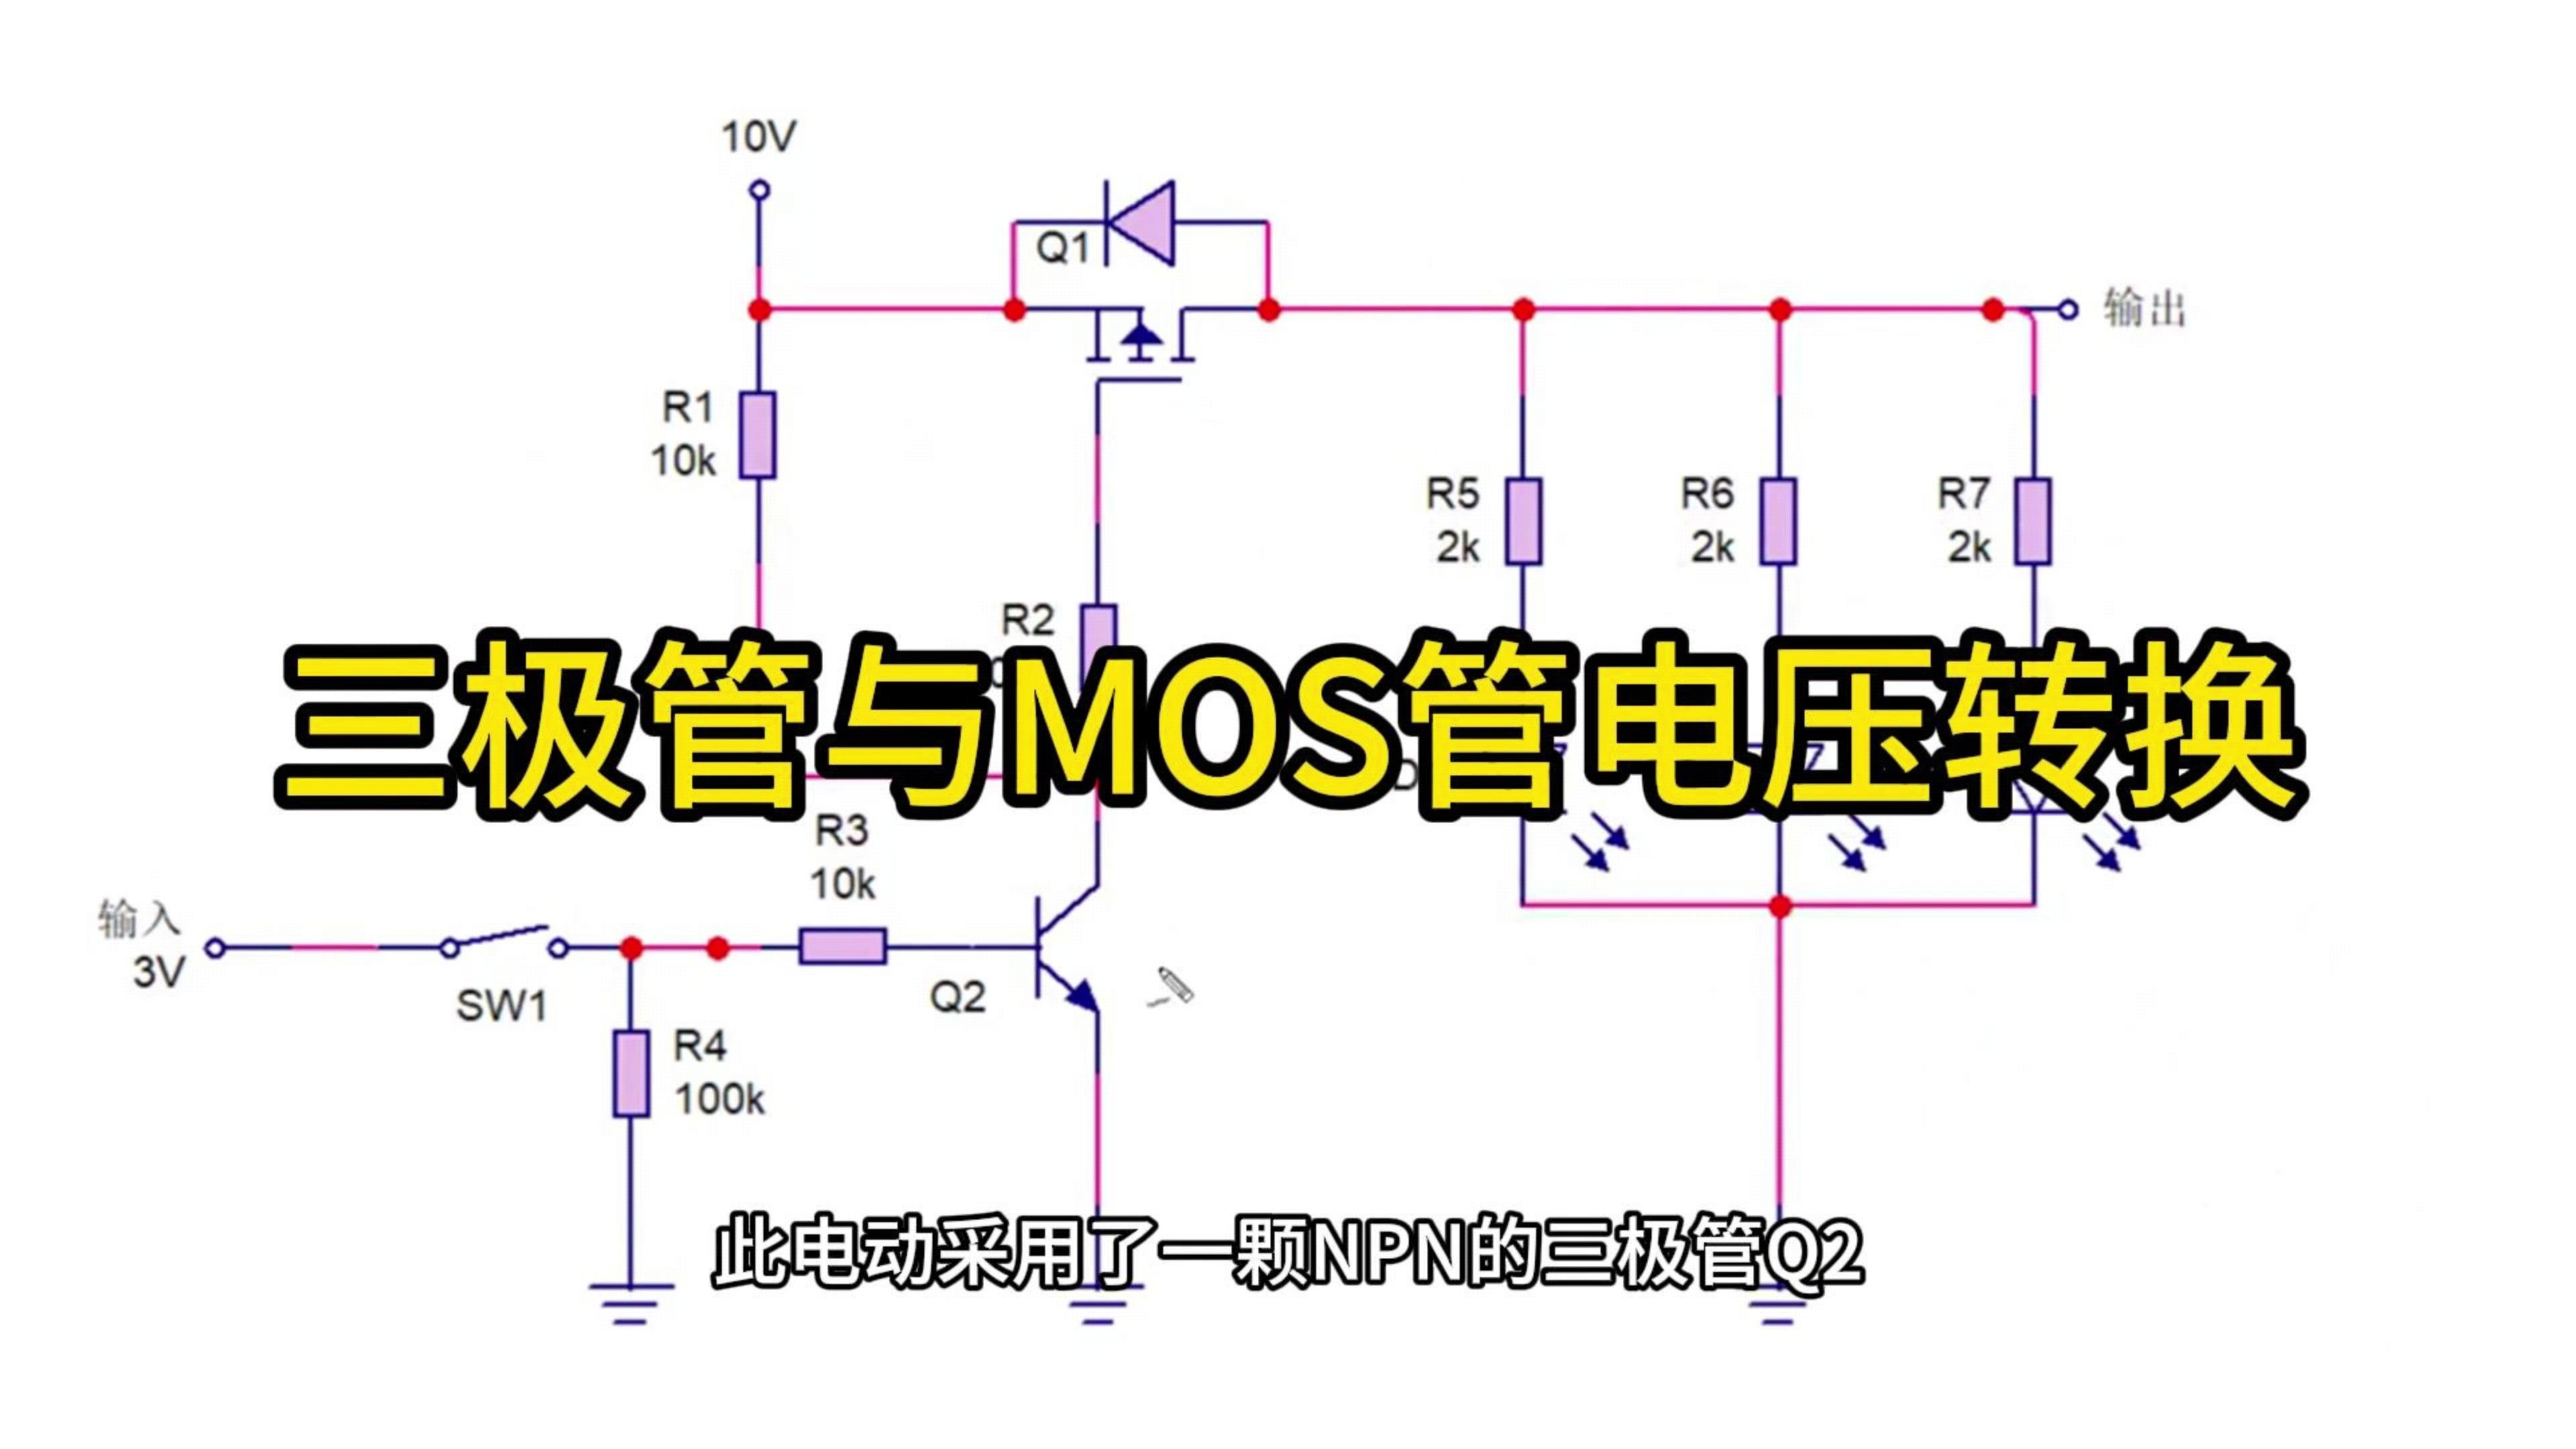 三极管与MOs管电压转换
#工作原理大揭秘 #电路原理 #电路知识 
